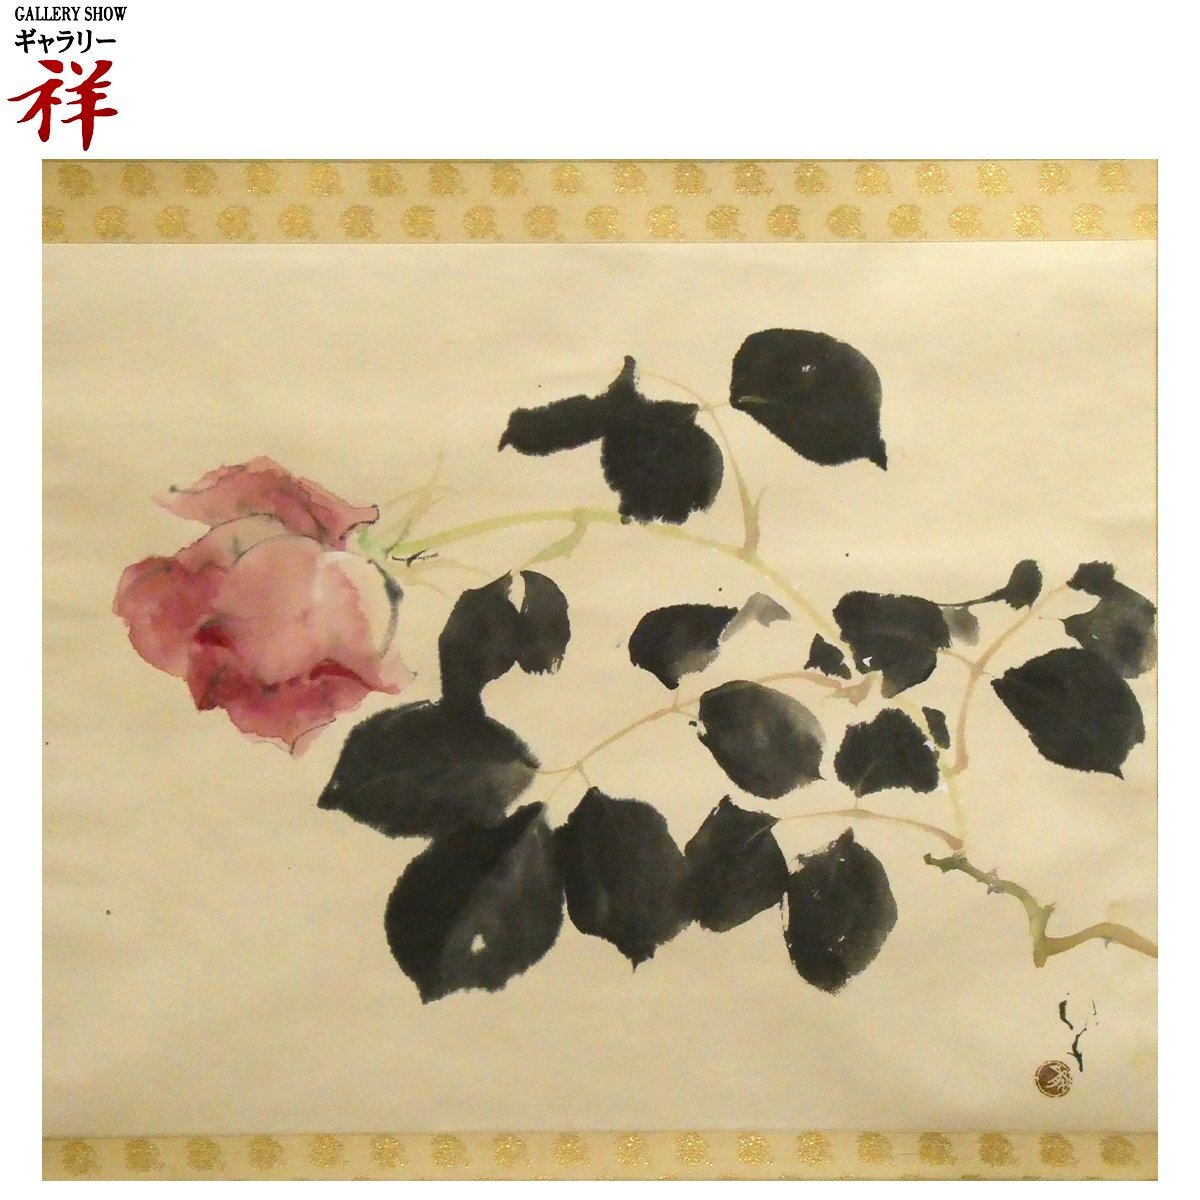 Sho [Obra auténtica] Ryuko Kawabata Pintura japonesa Red Rose, 39x48, 7cm, misma caja, Nació enWakayama, Orden de la Cultura, escrito, único en su tipo [Galería Sho], cuadro, pintura japonesa, flores y pájaros, pájaros y bestias